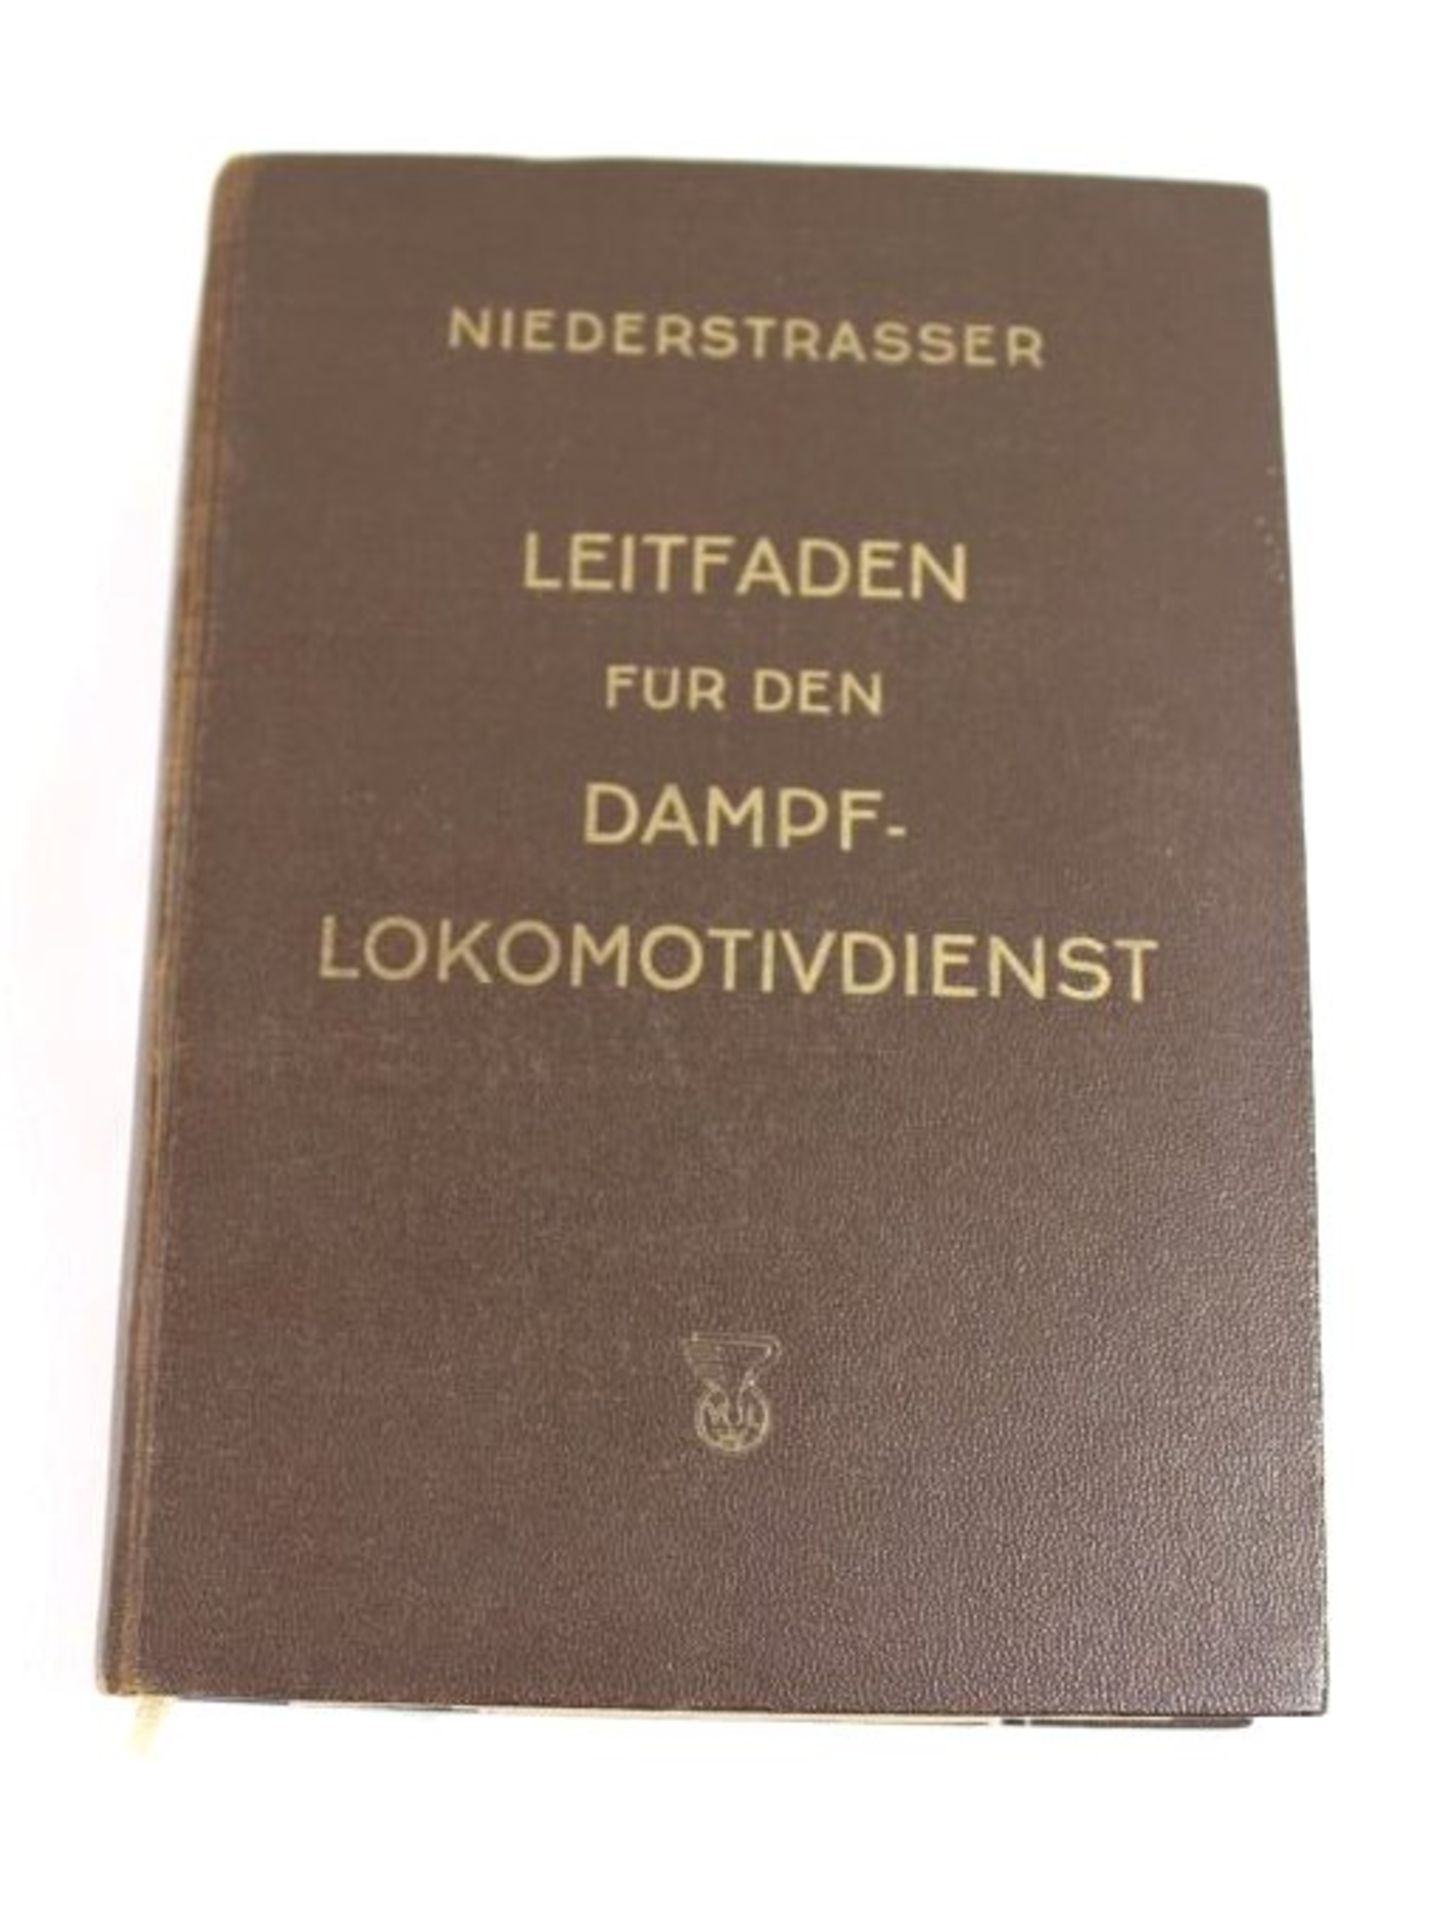 Leitfaden für den Dampfloomotivdienst, Leopold Niederstrasser, 1951, Alters-u. Gebrauchsspuren.